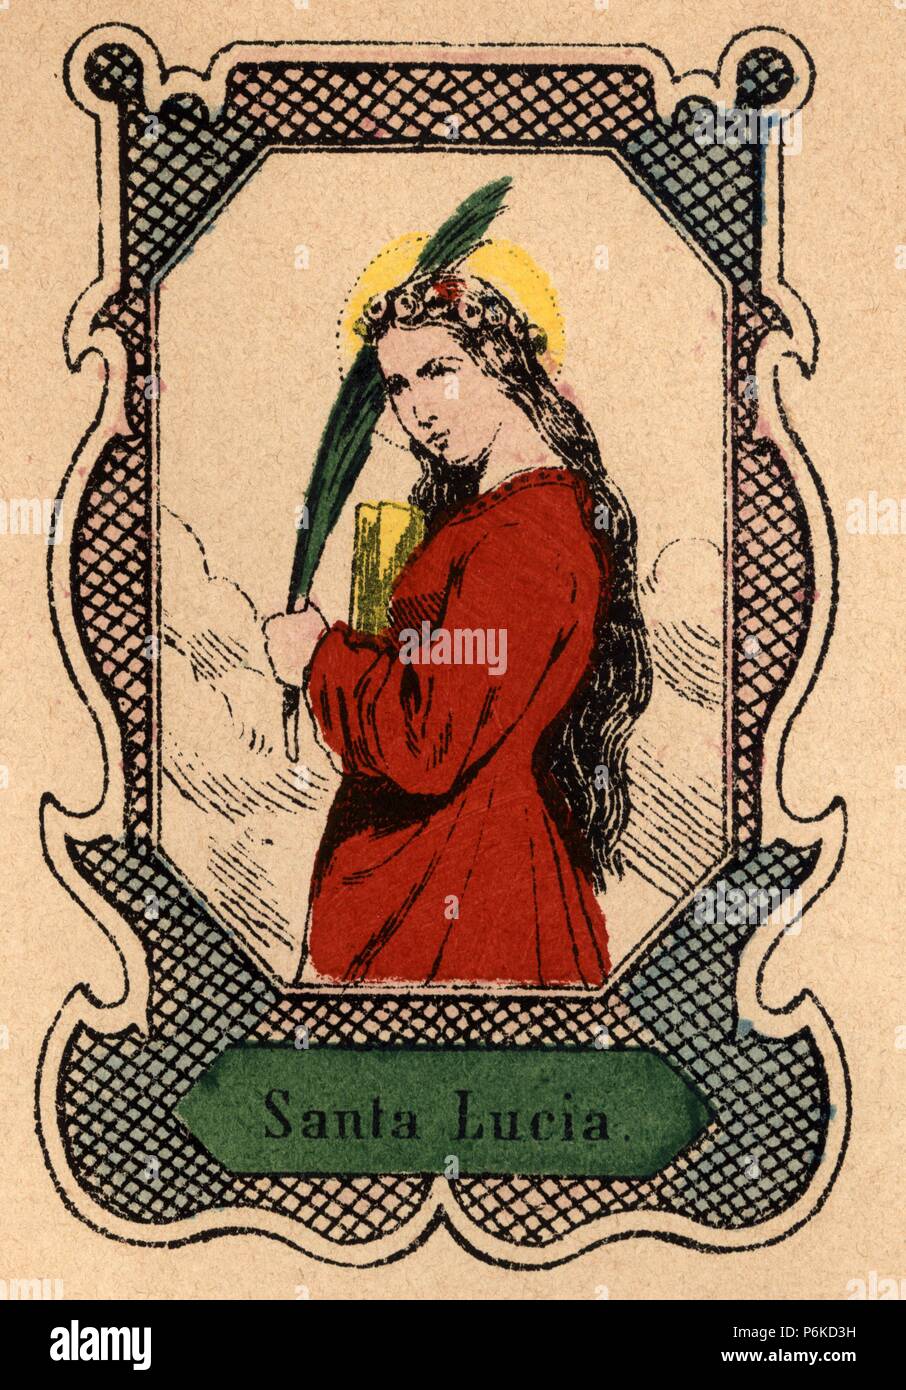 Santa Lucía de Siracusa (283-304), mártir cristiana venerada por las iglesias católica y ortodoxa; patrona de los ciegos. Grabado popular pintado a la trepa de 1870. Stock Photo